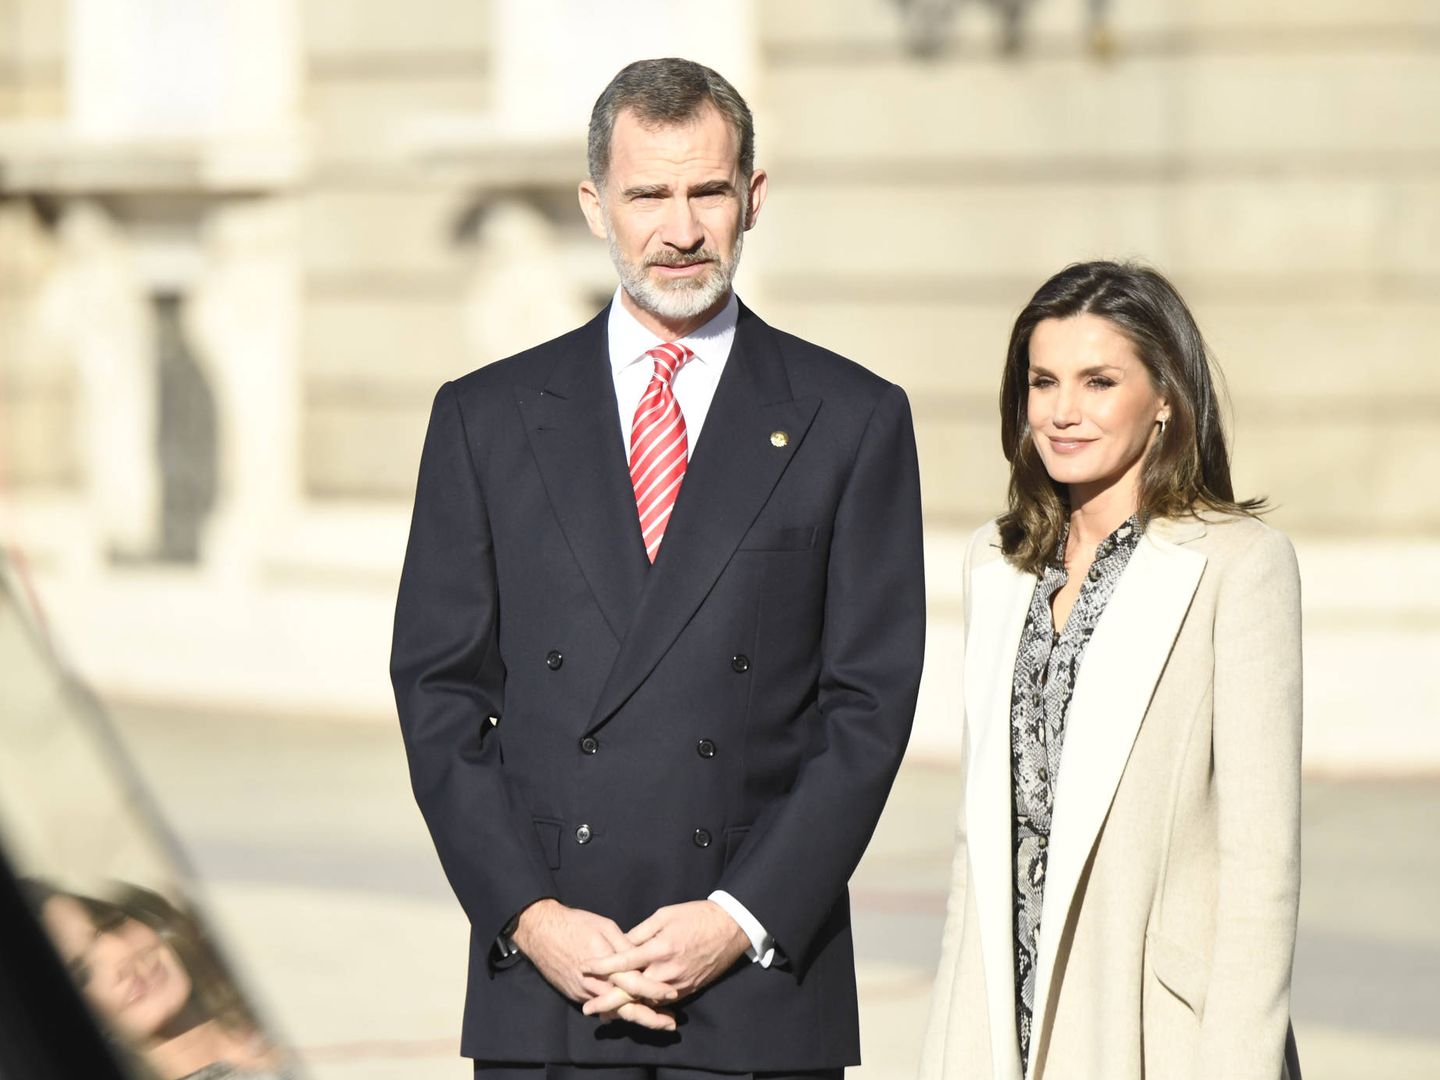 Los Reyes presiden el recibimiento oficial al presidente de Perú y su esposa. (Limited Pictures)